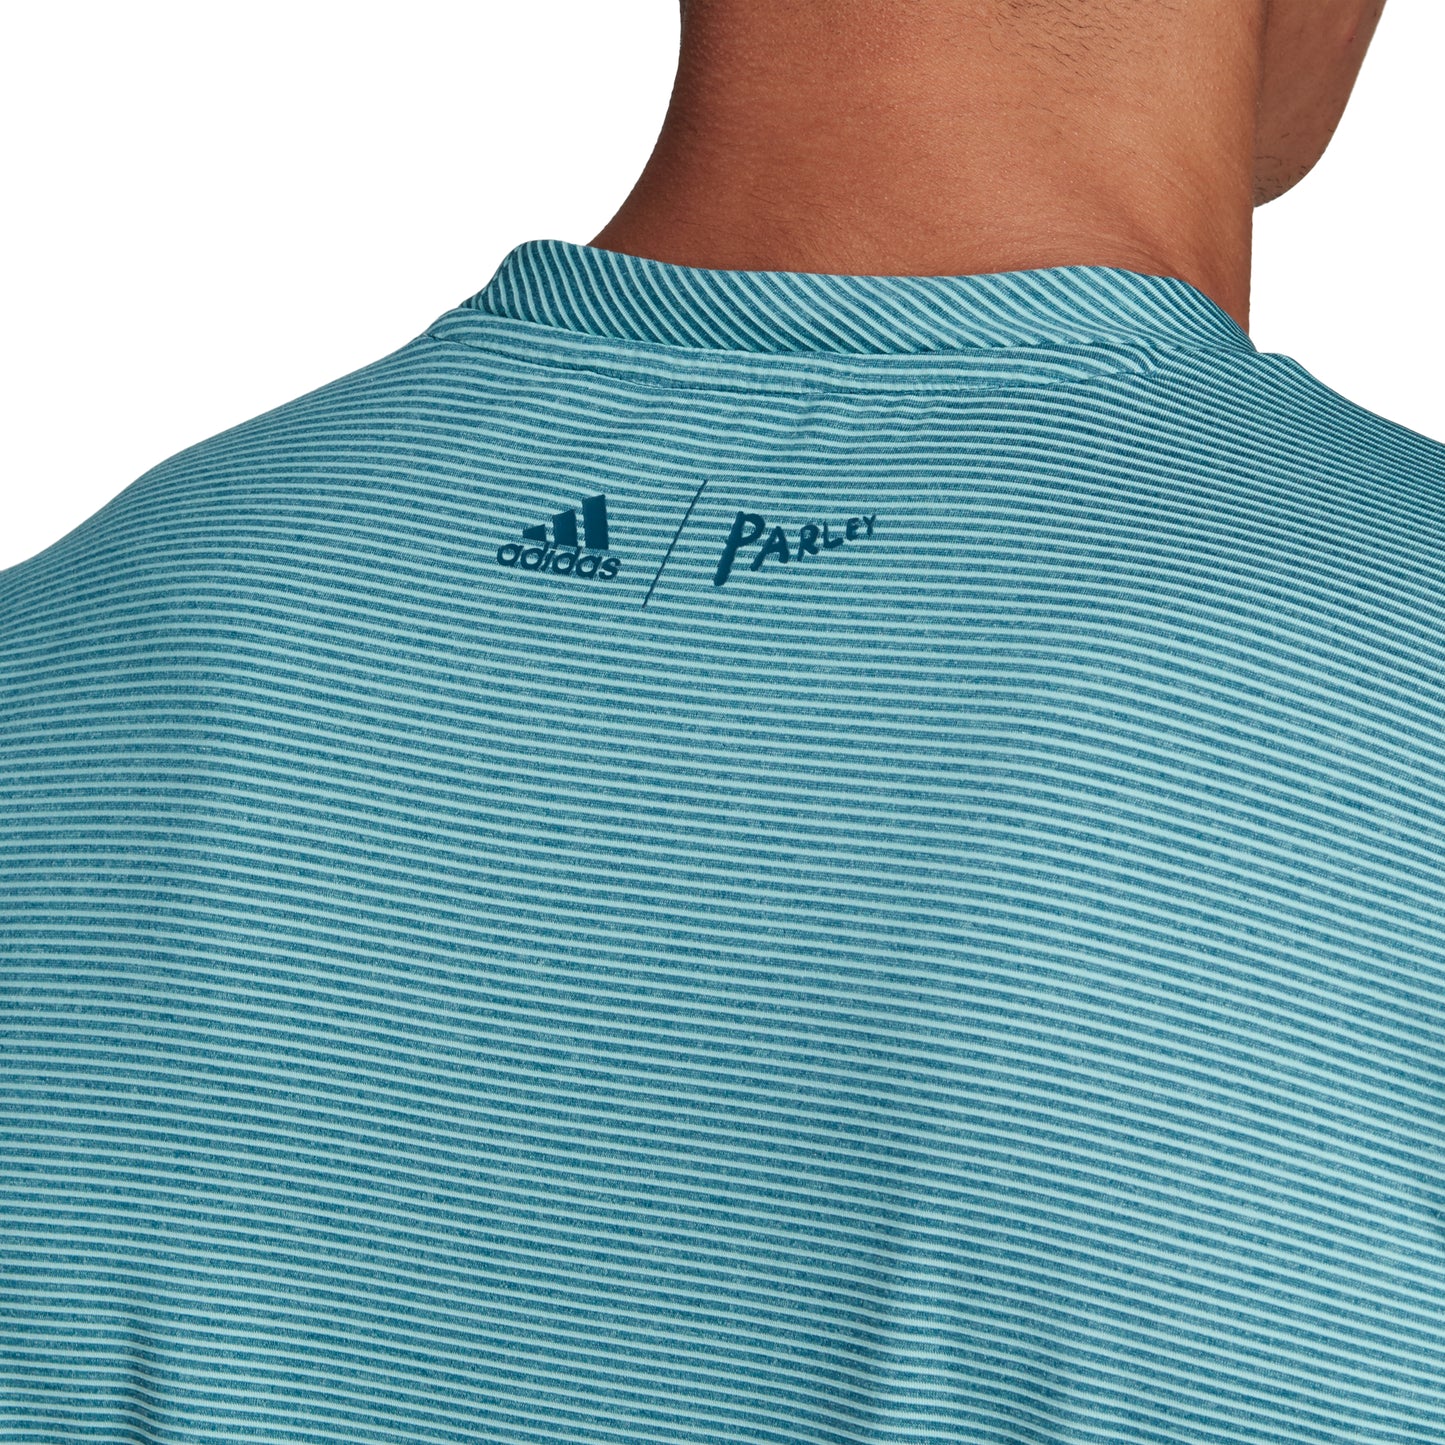 adidas Men's T-shirt - Parley Striped Blue Spirit DP0286 - VuTennis